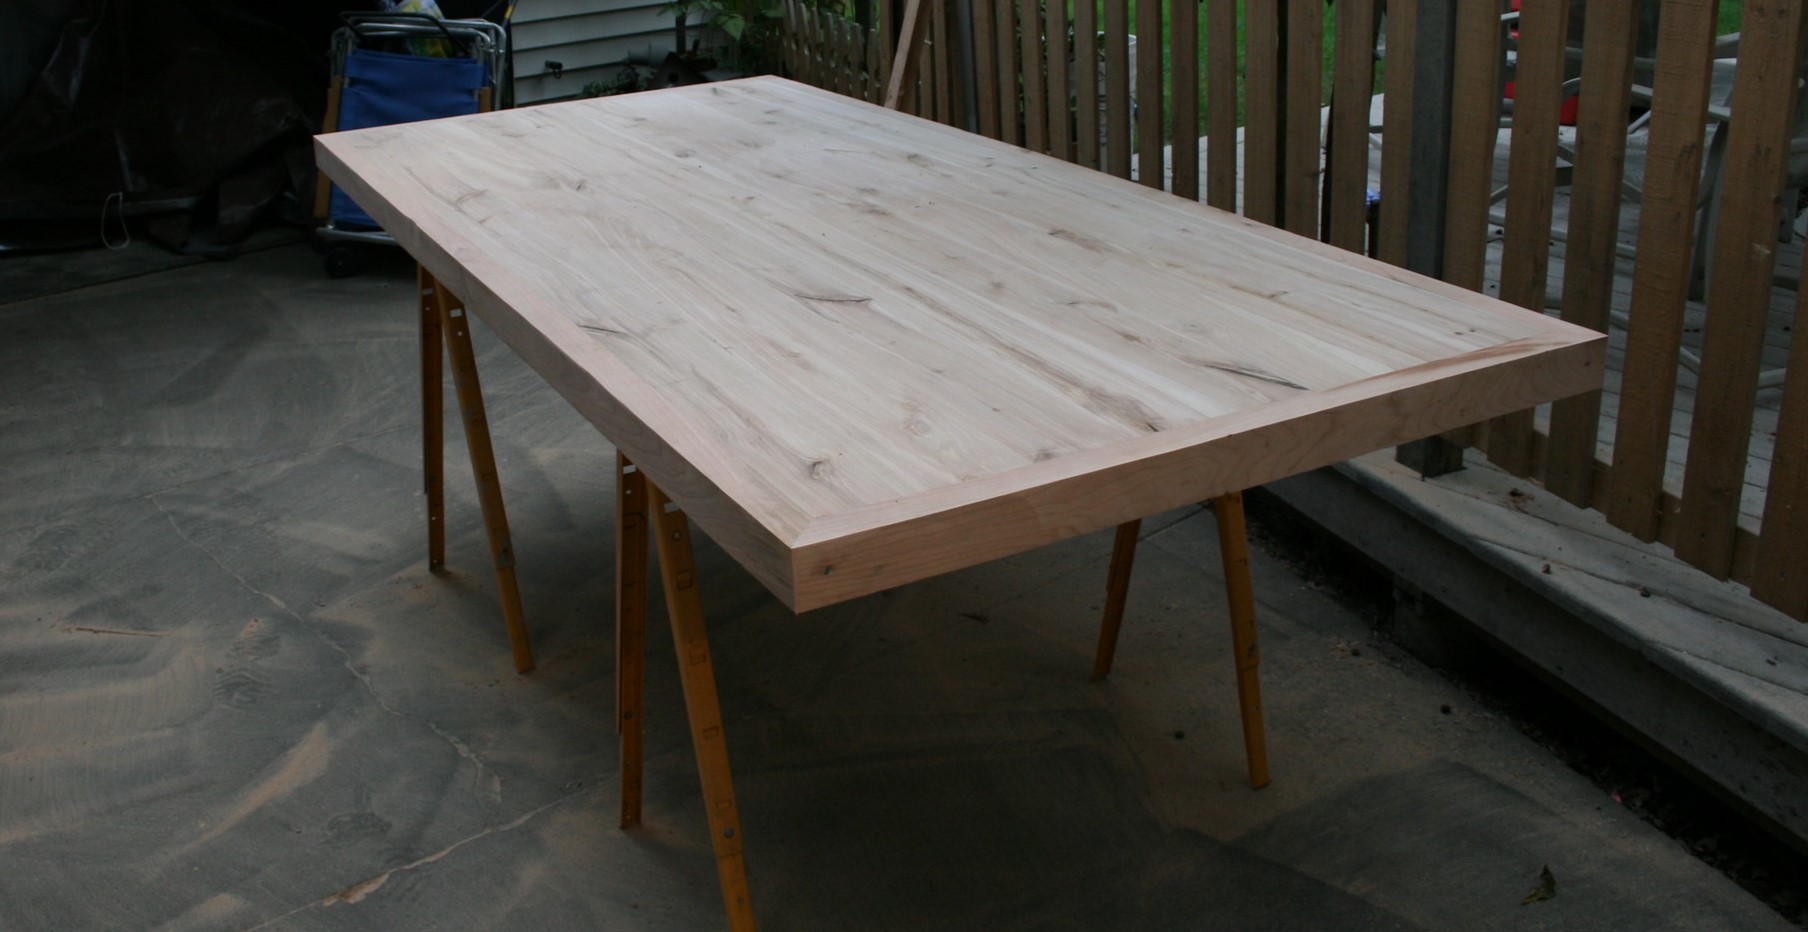 Деревянный стол на опорах-козлах можно использовать в скандинавском интерьере